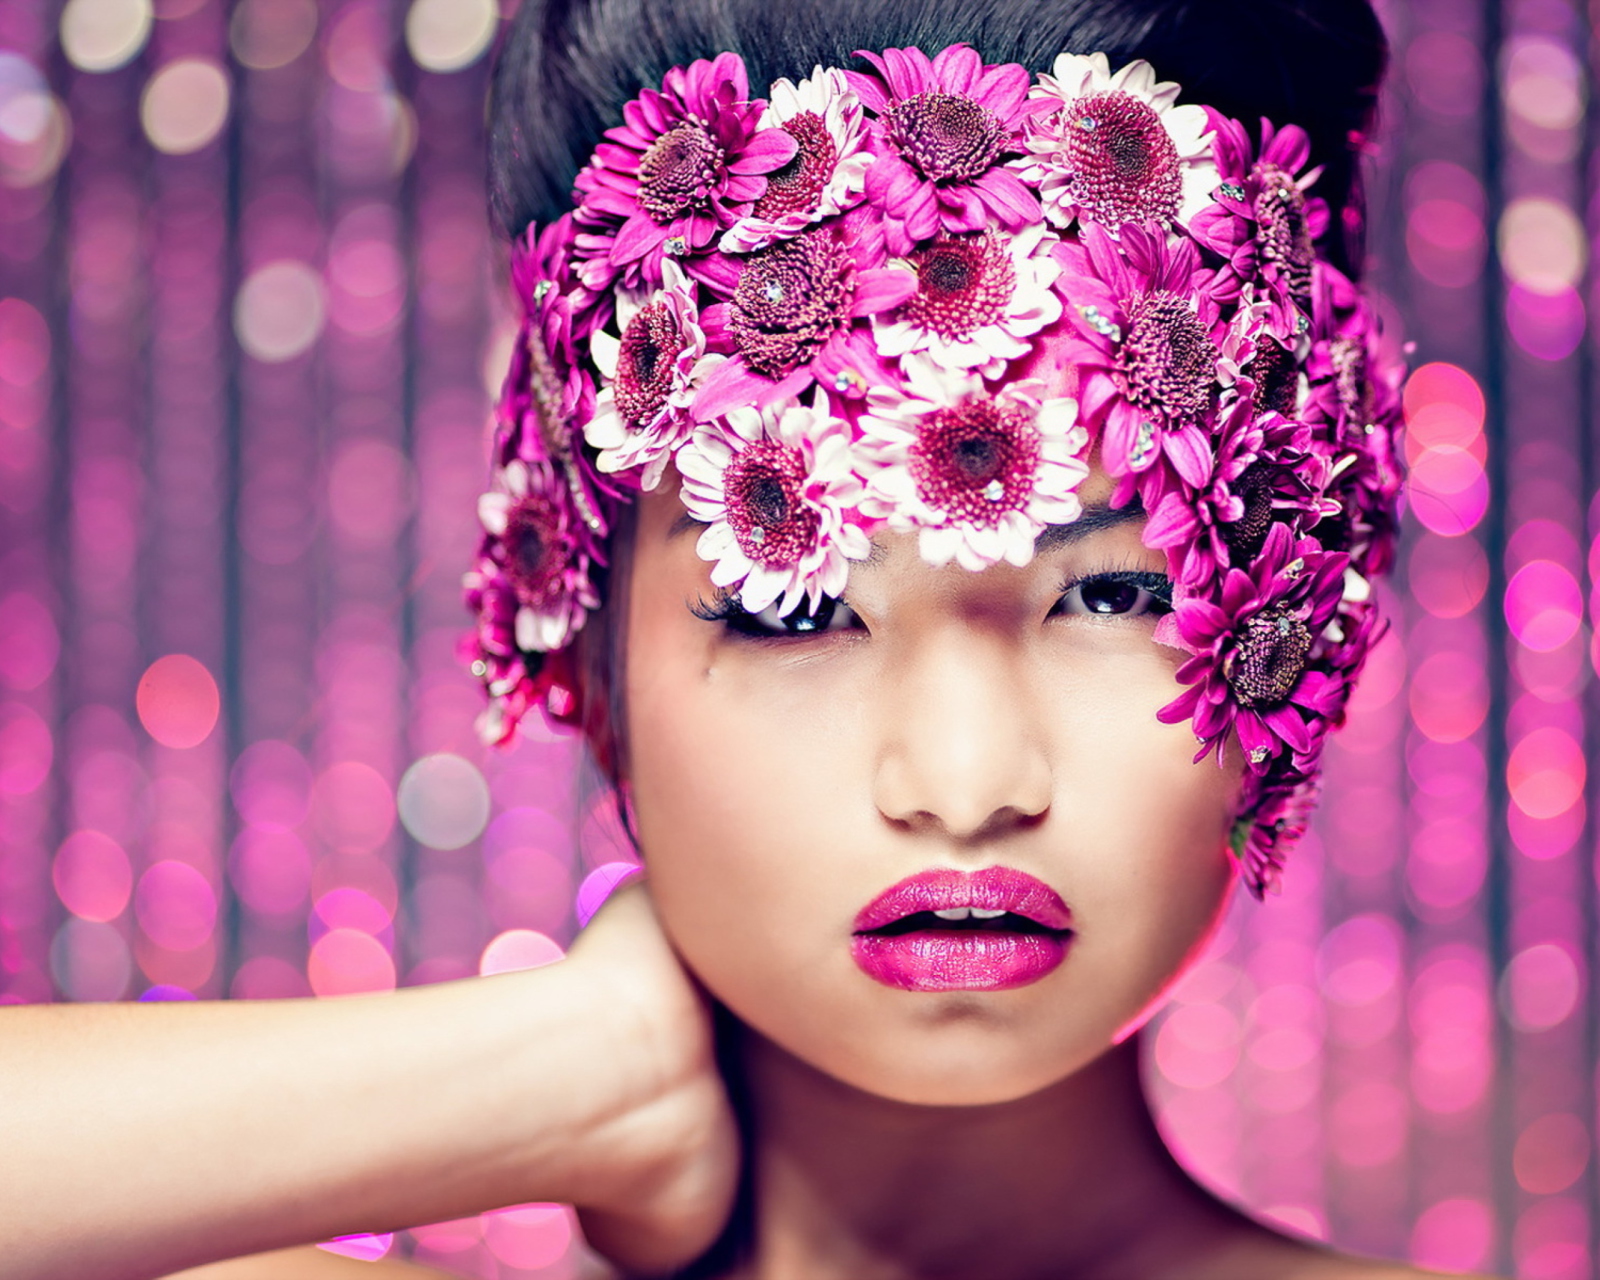 Обои Asian Fashion Model With Pink Flower Wreath 1600x1280